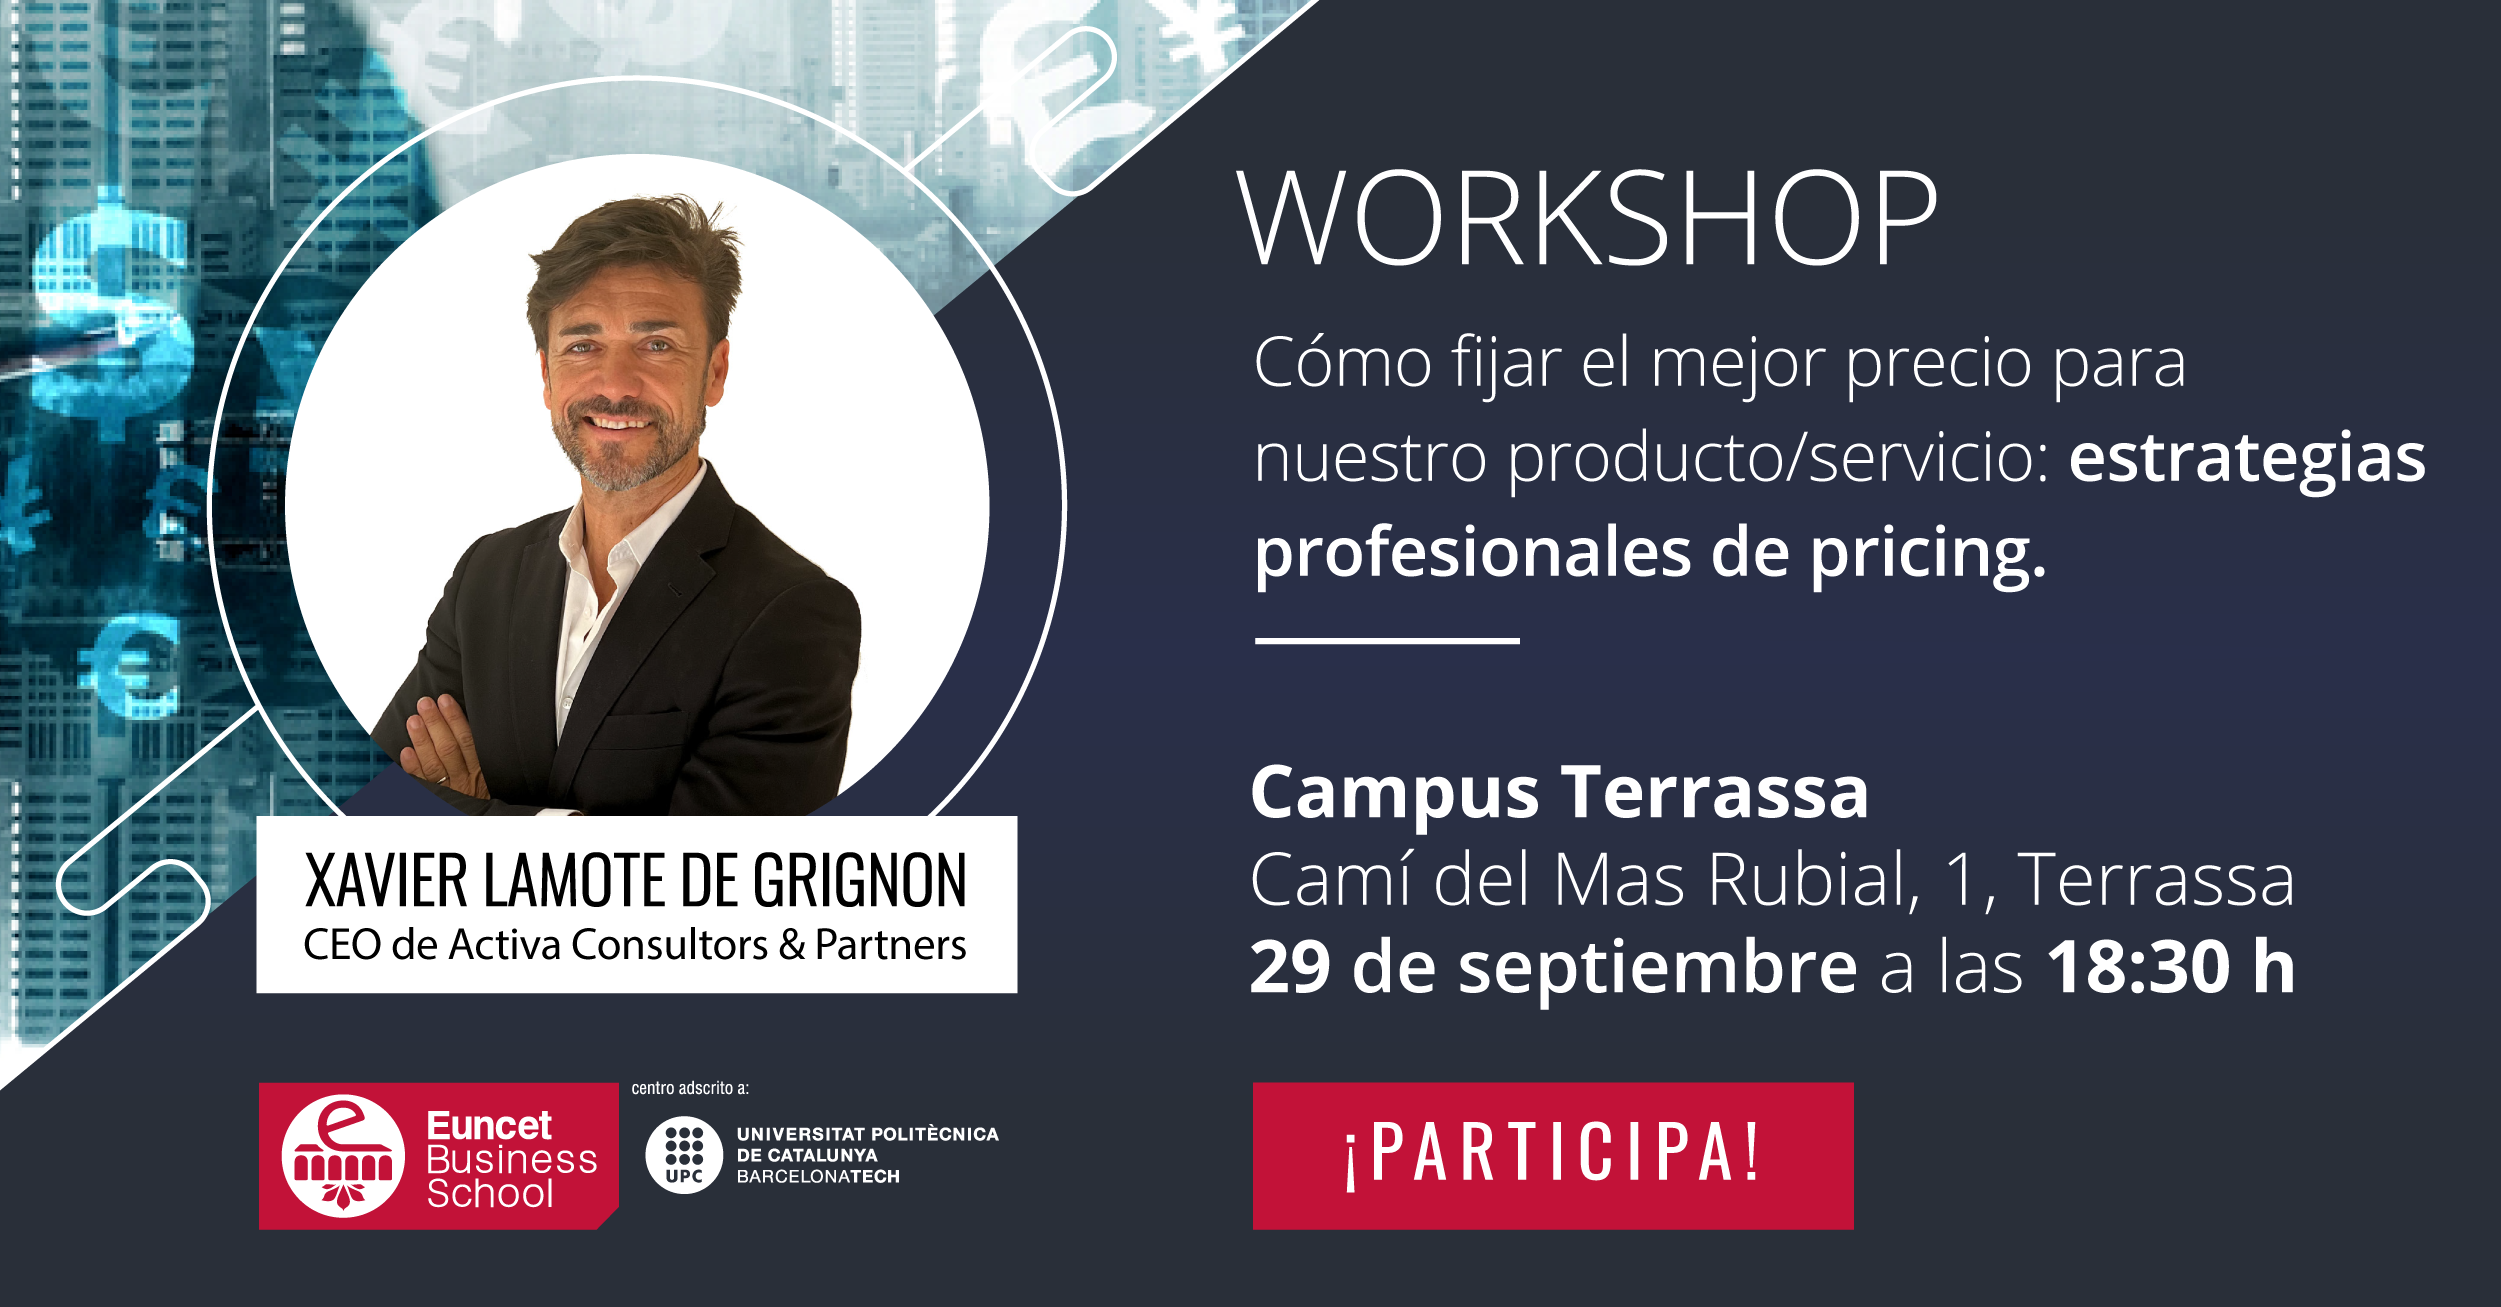 Workshop: "Cómo fijar el mejor precio para nuestro producto/servicio: estrategias profesionales de pricing"